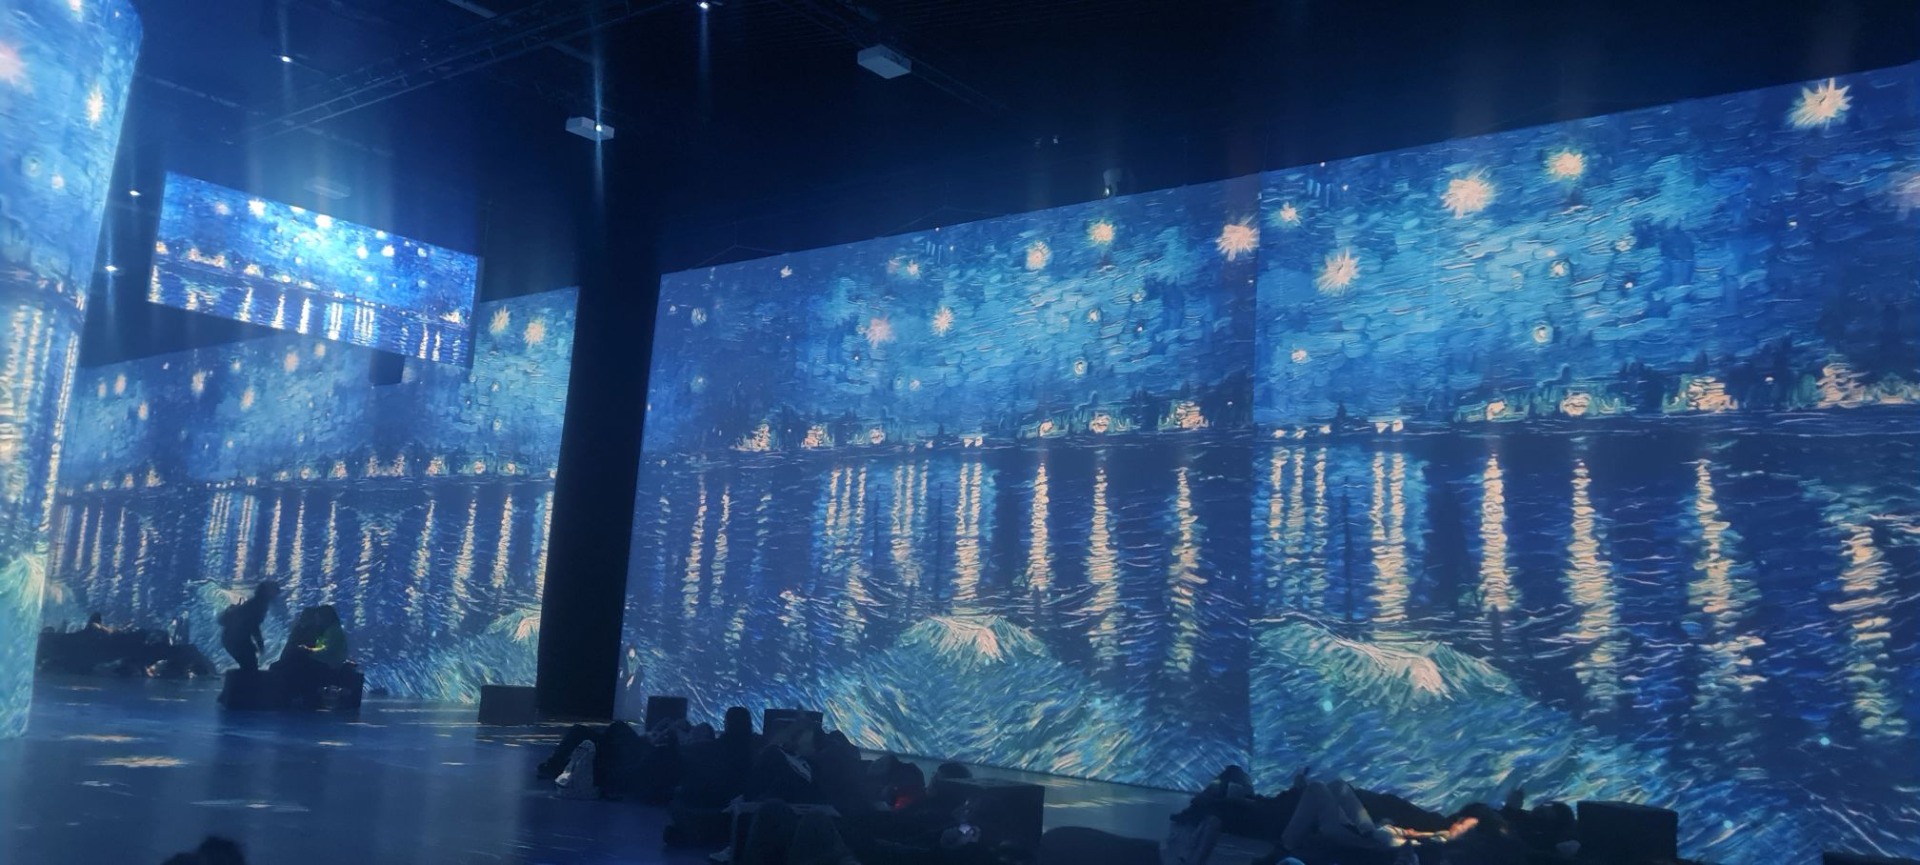 Obraz przedstawiający morze nocą wyświetlony na wielkoformatowej powierzchni. Widoczne sylwetki osób oglądających wystawę.